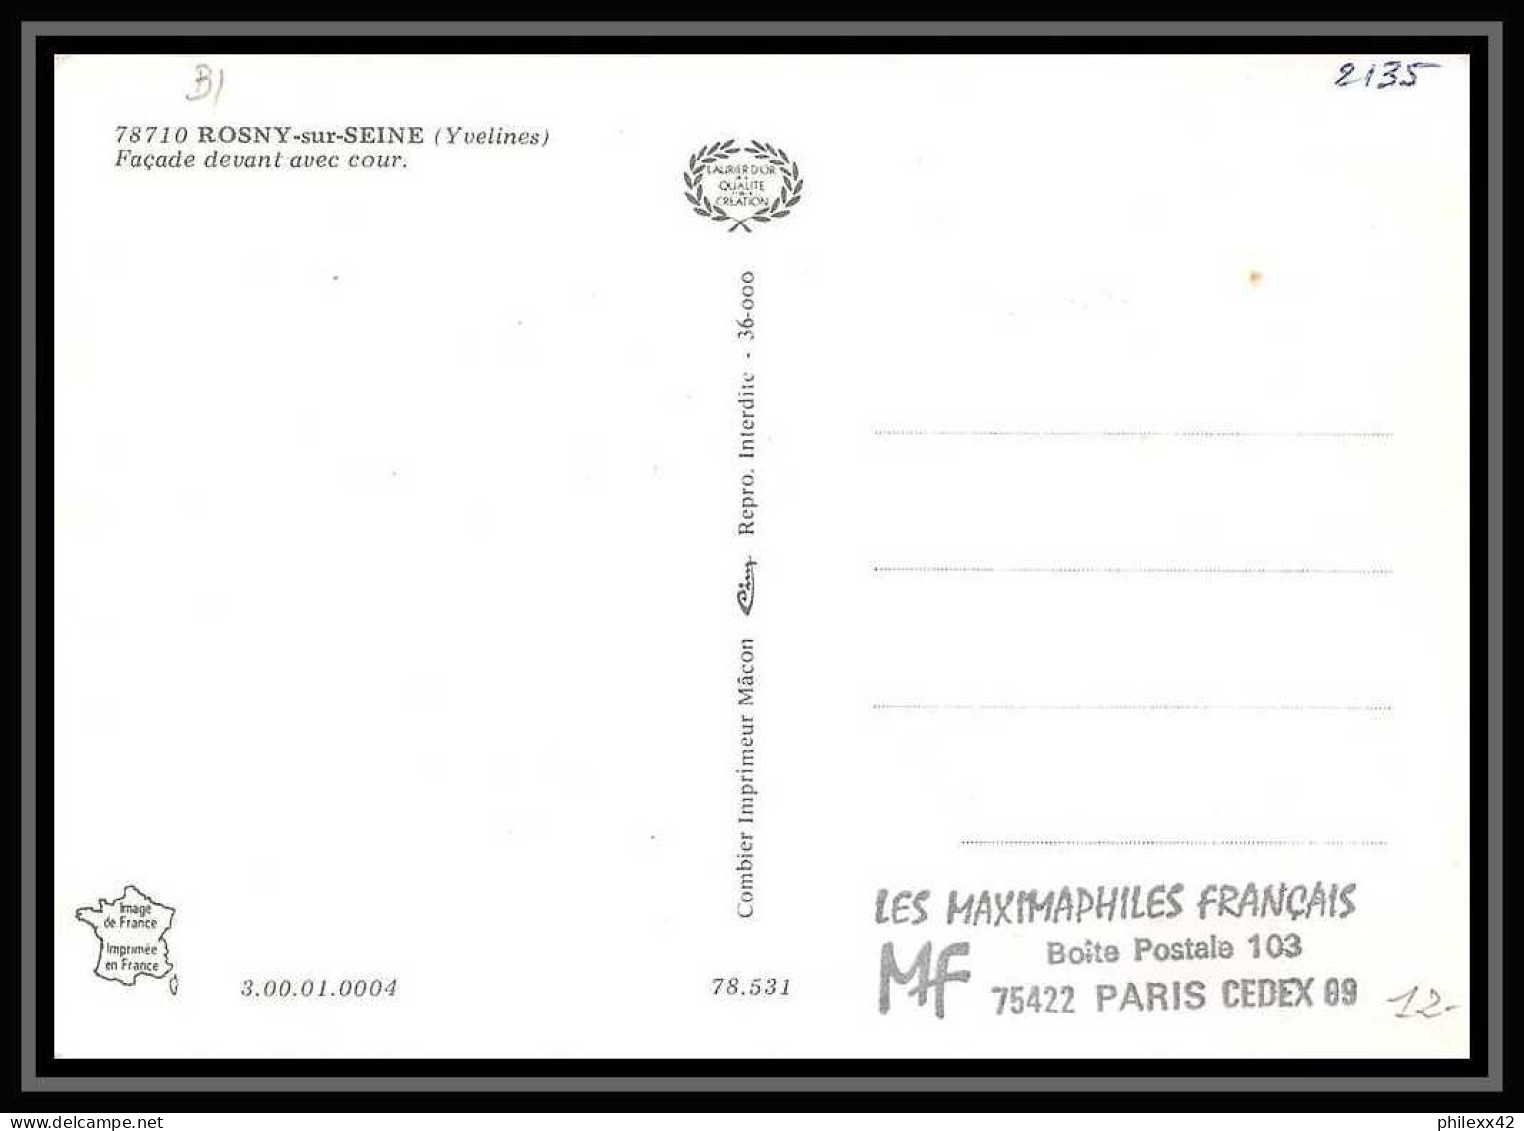 3835/ Carte Maximum (card) France N°2135 Château (castle) De Sully à Rosny-sur-seine Fdc Edition Combier 1981  - 1980-1989